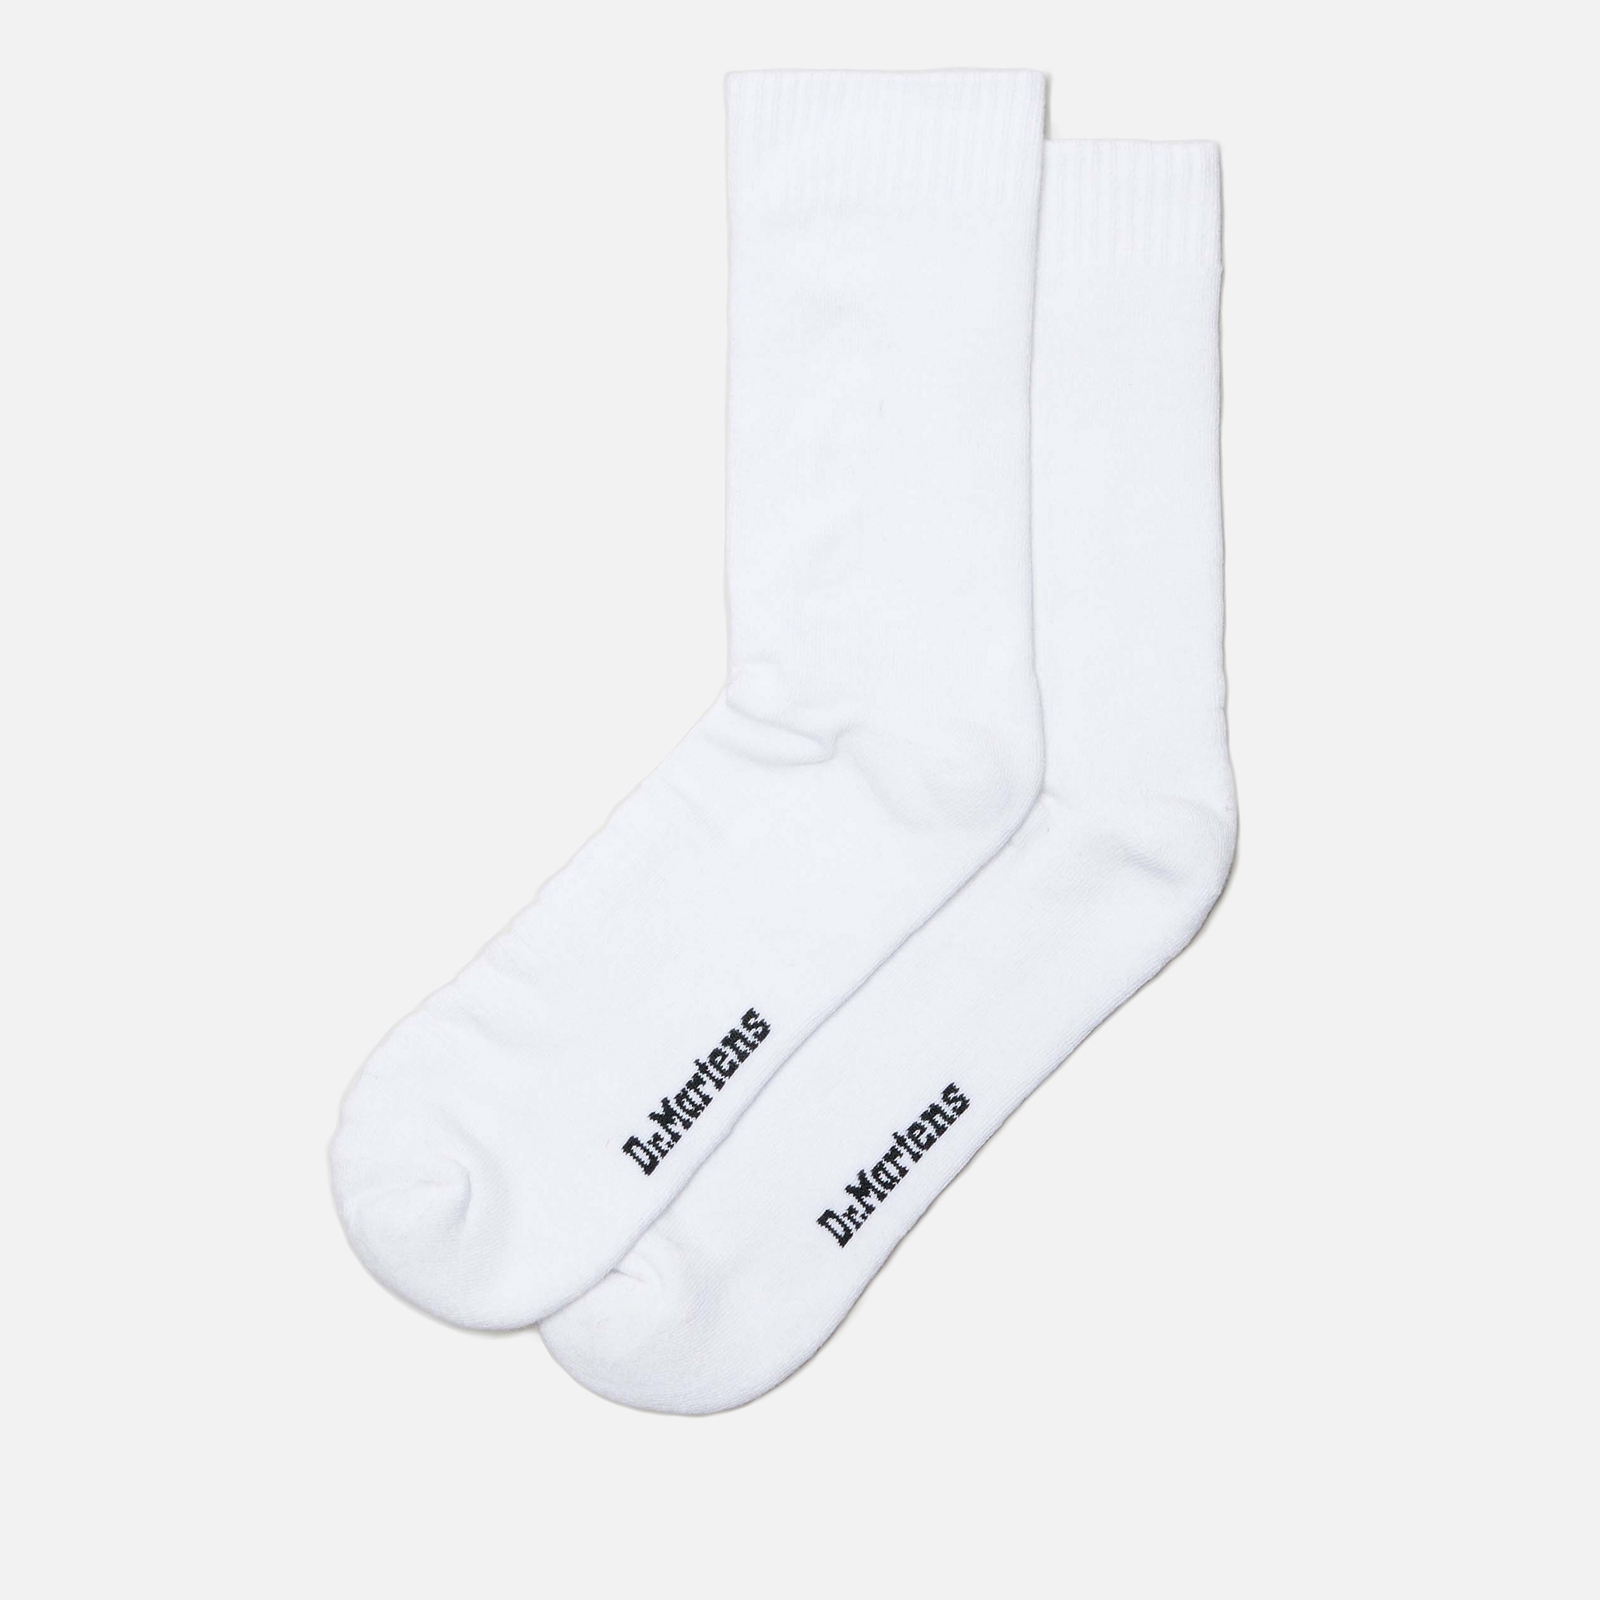 Dr. Martens Double Dock Cotton-Blend Socks - S/M